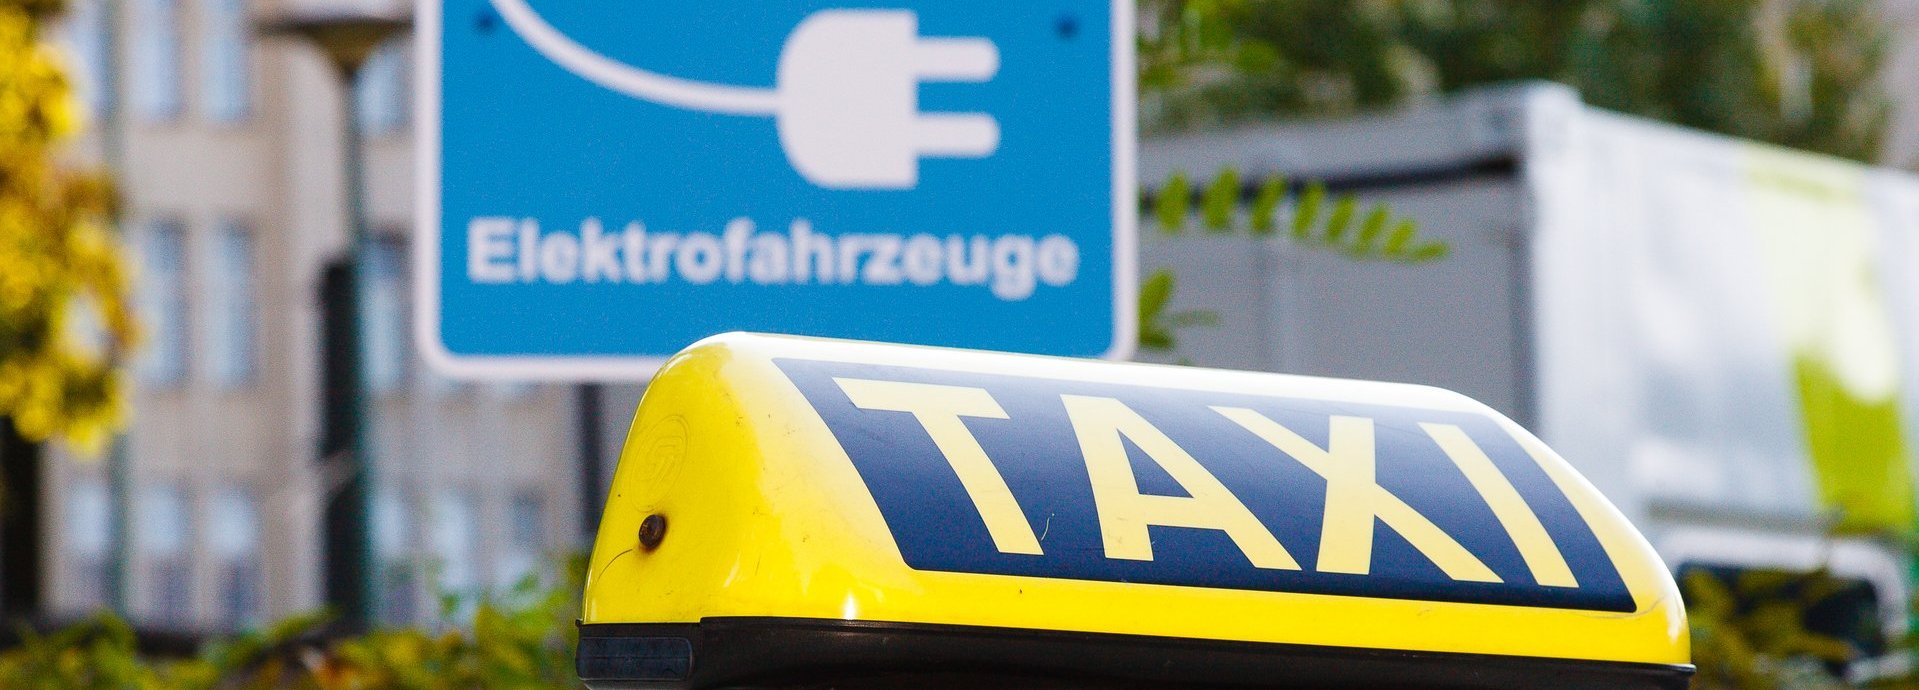 Straßenschild Reserviert für Elektrofahrzeuge in der Stadt, davor ein Taxizeichen